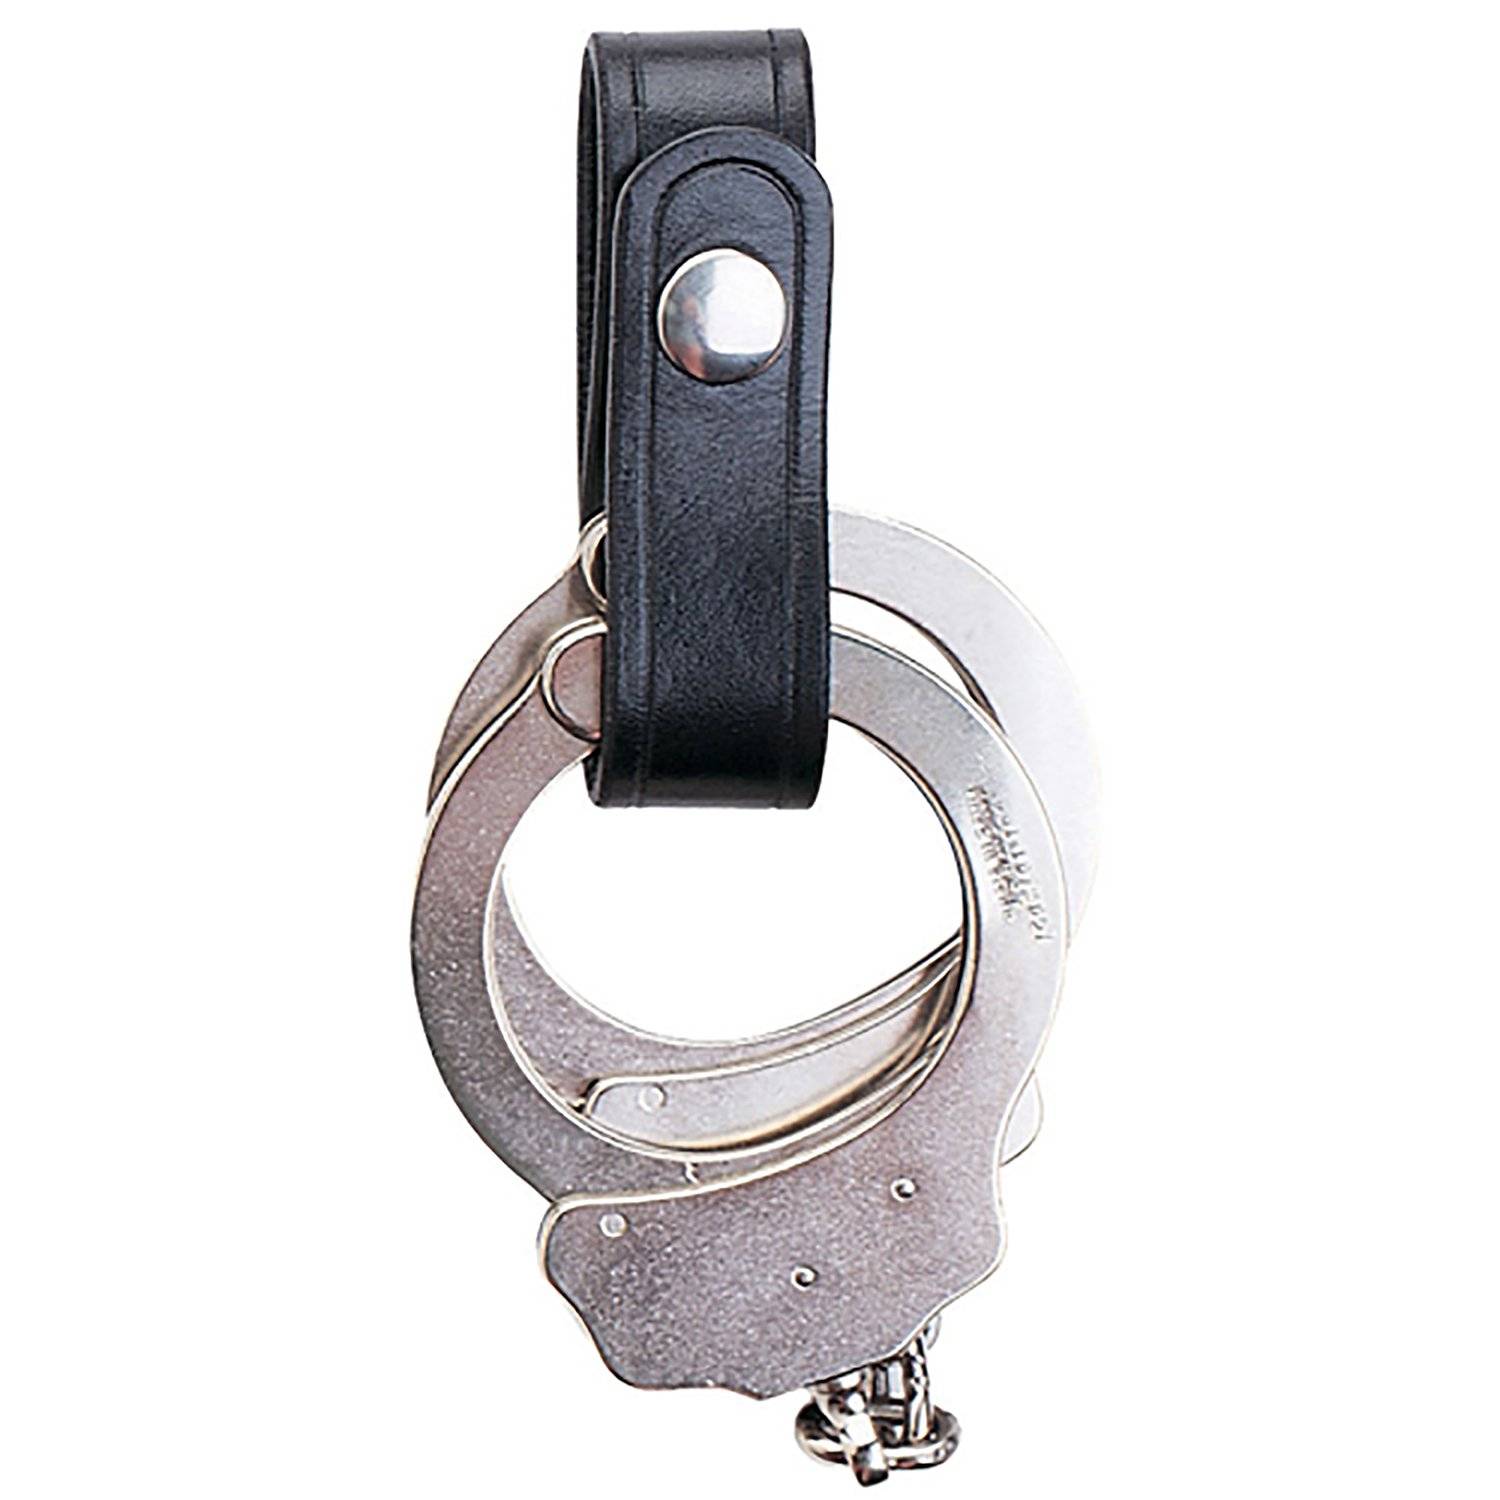 Safariland 690-2 Black 1" Chrome Snap Handcuff Cuff Strap 